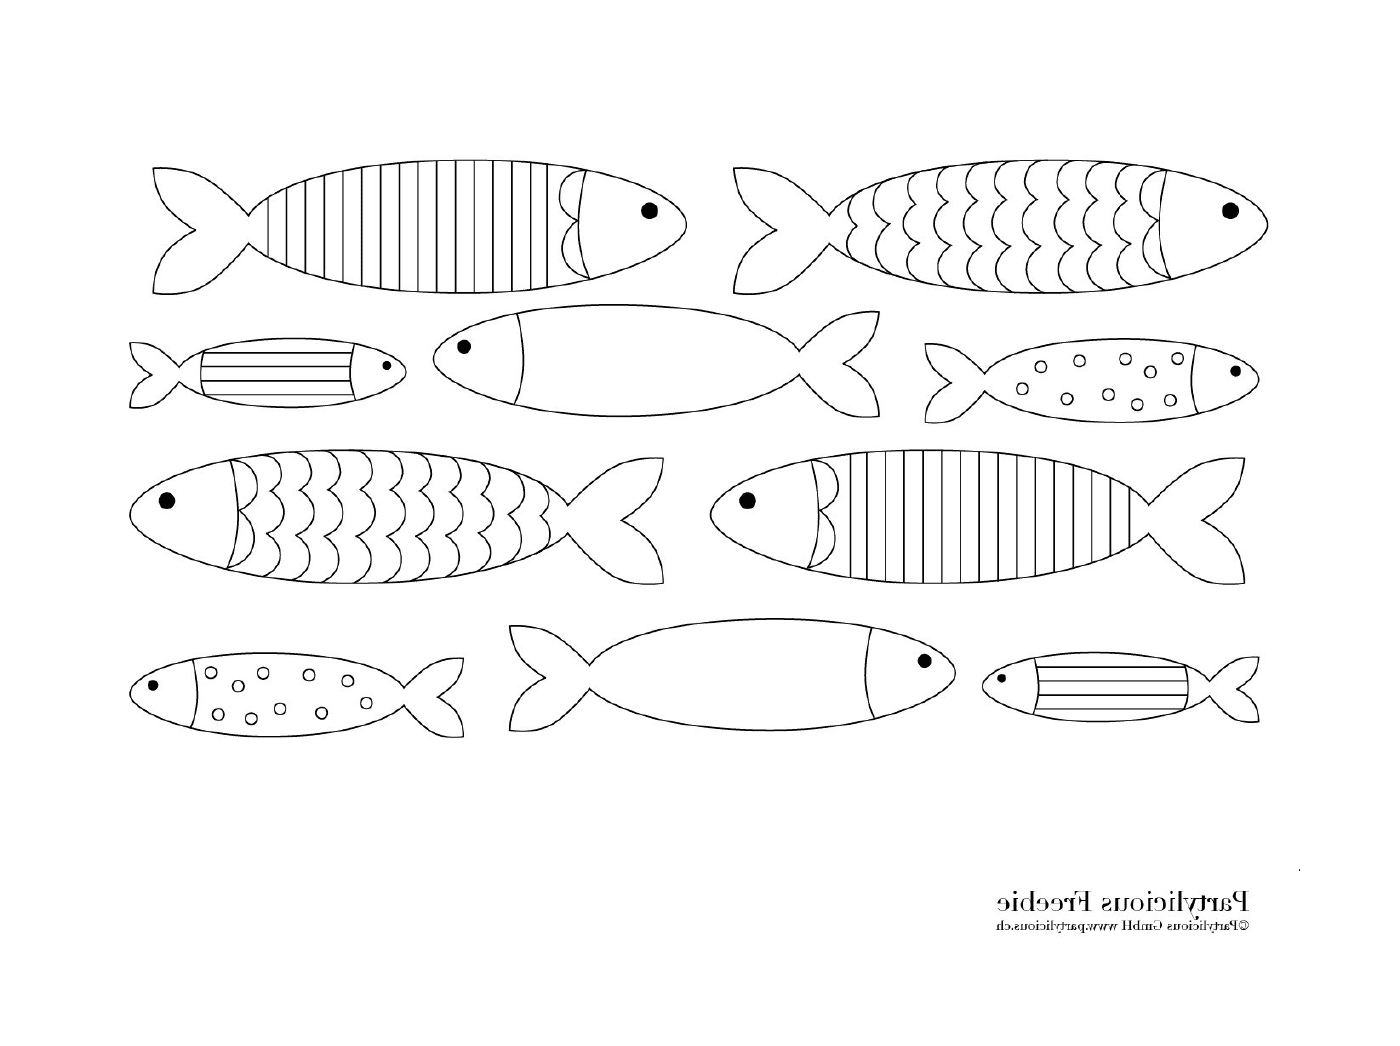  页面上有许多不同的鱼 